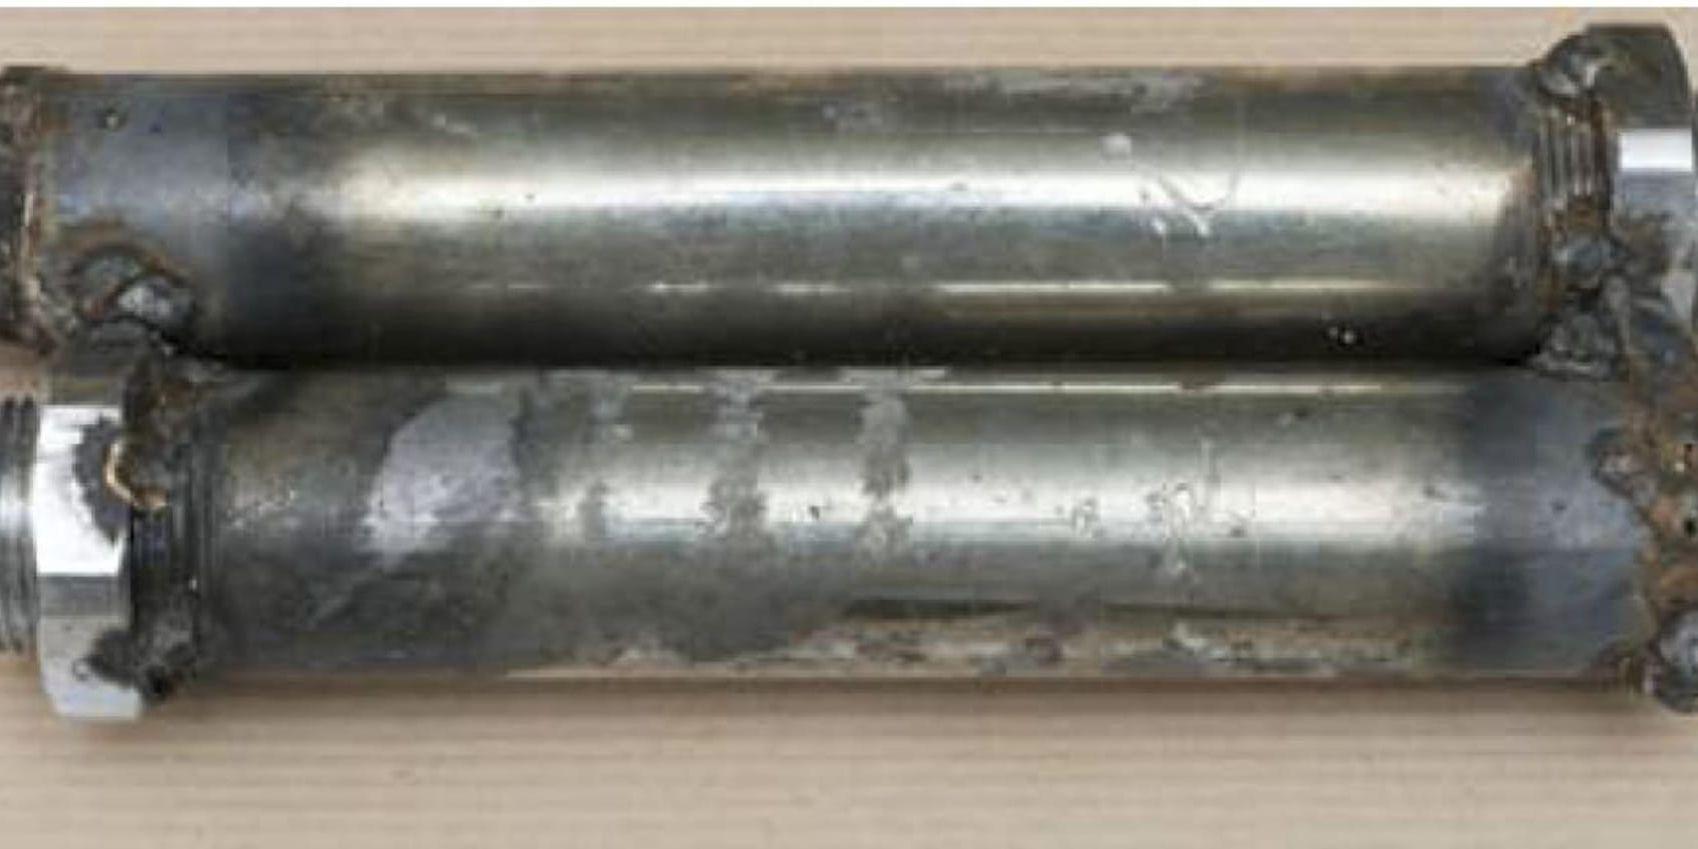 Sprängladdningen som skickades till företaget i London bestod av metallrör med ett explosivt ämne.